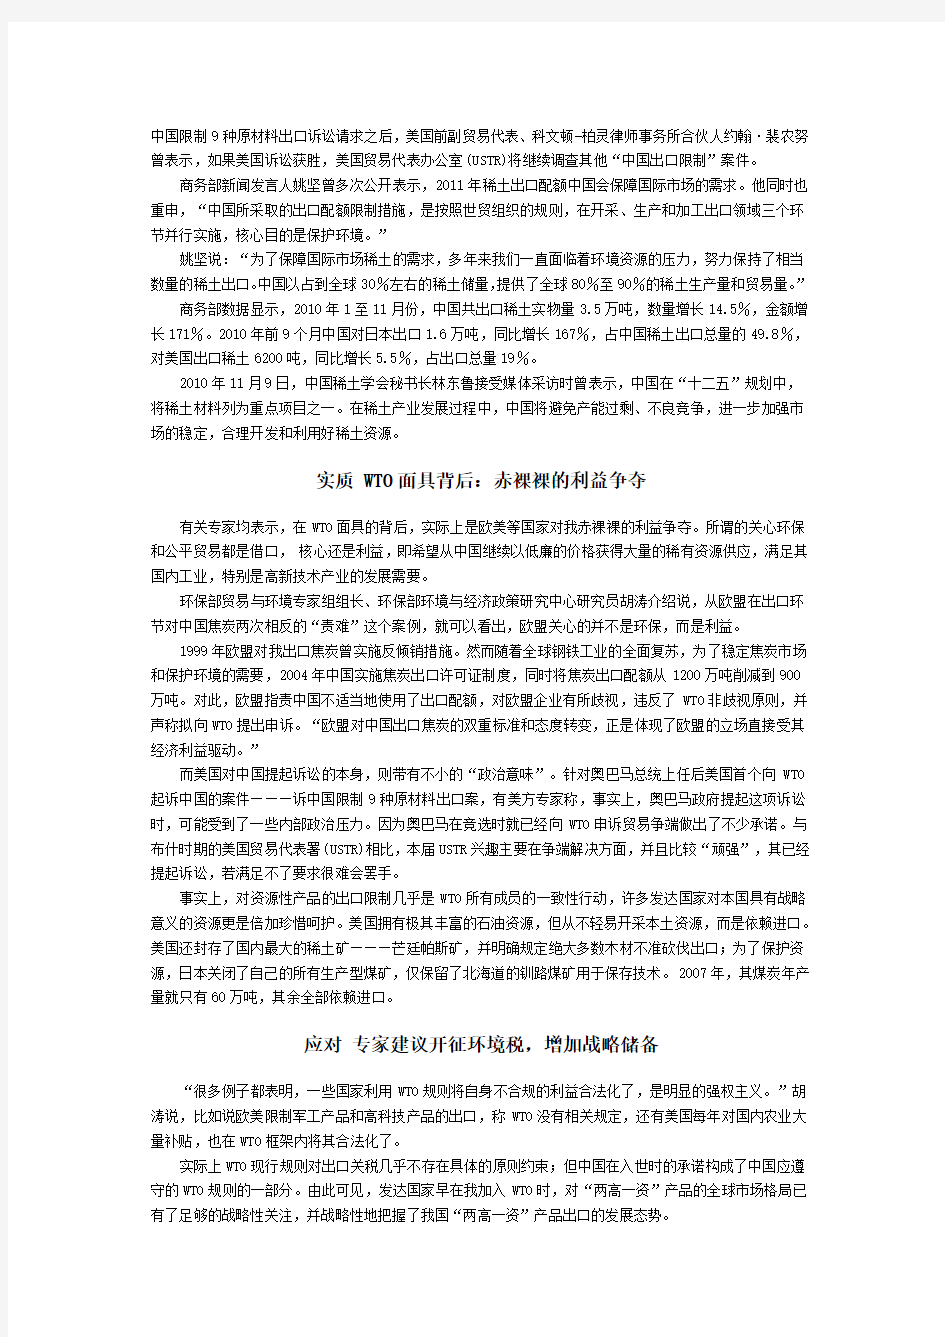 WTO初裁中国限制原材料出口违规2011.2.23